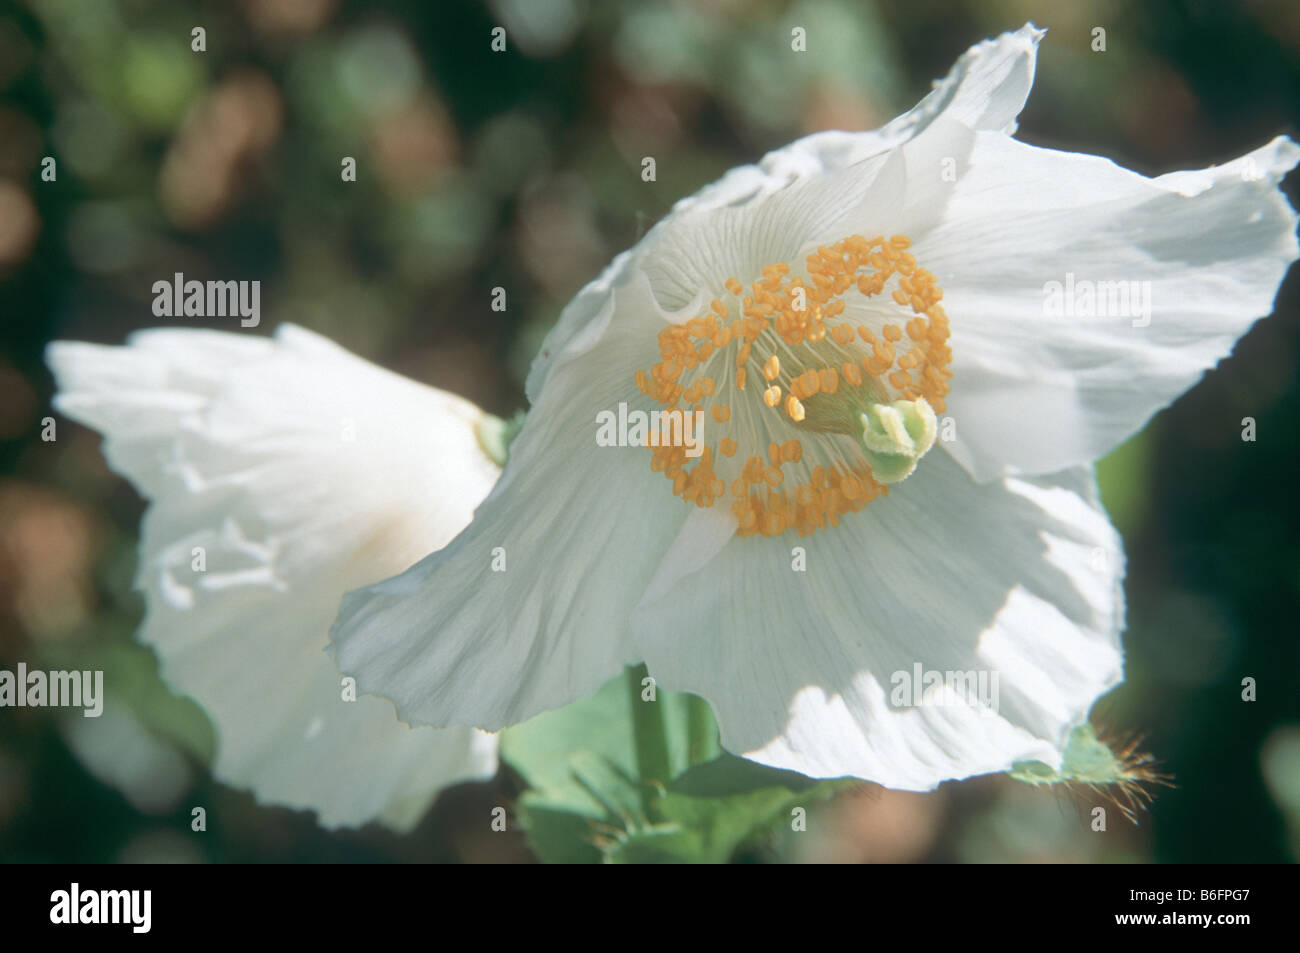 Meconopsis betonicifolia f. alba in bloom in spring garden. Stock Photo